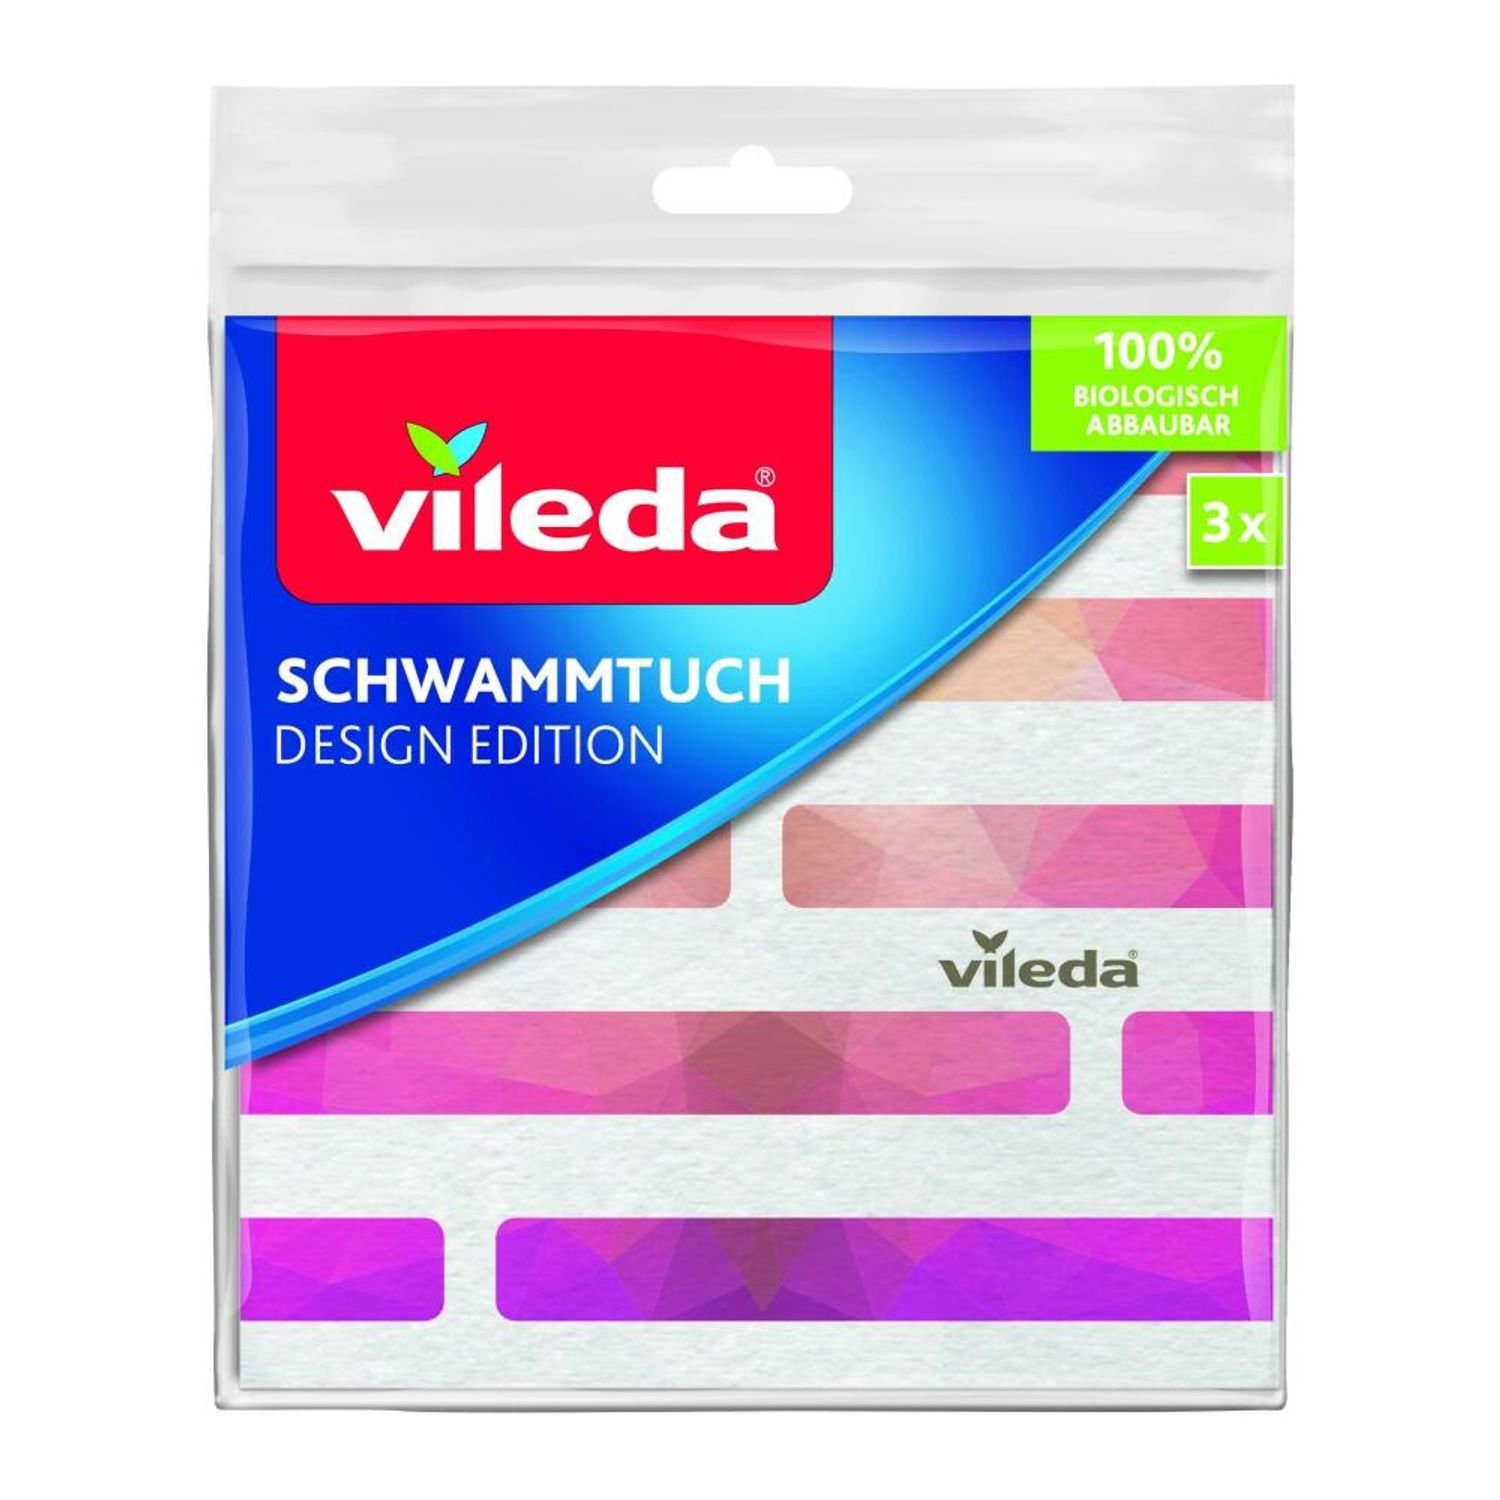 Vileda 12x VILEDA Schwammtuch 3er 100% biologisch abbaubar 36 Stück Lappen Wischbezug